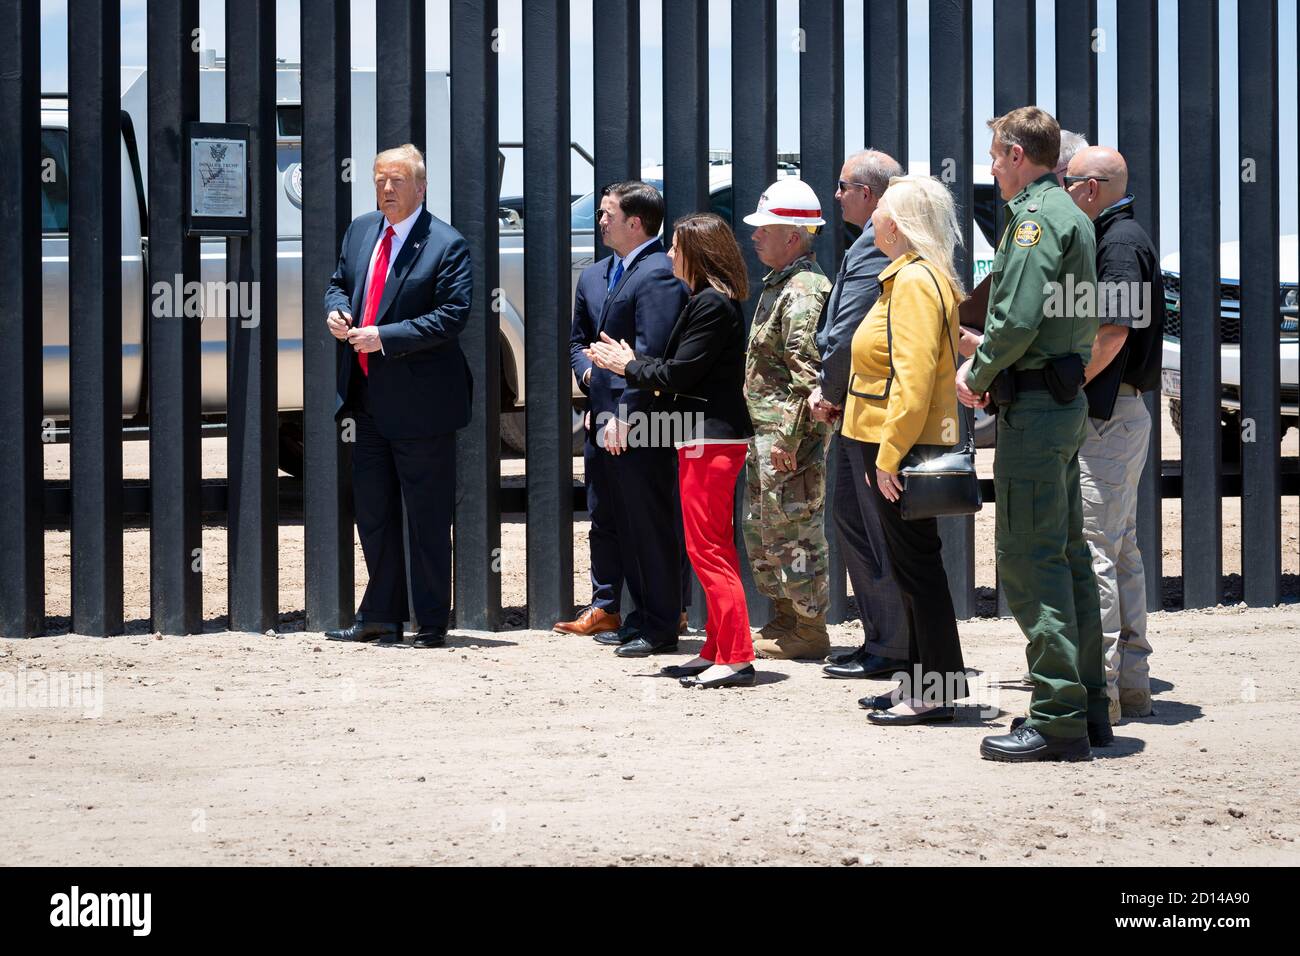 Il presidente Donald Trump, insieme al segretario di Stato al governo Chad Wolf e al commissario responsabile Mark Morgan, ha visitato il muro di confine a Yuma, Arizona, il 23 giugno 2020. La visita ha segnato il completamento di 200 miglia di nuovo muro di confine costruito lungo il confine sud-ovest. Foto Stock